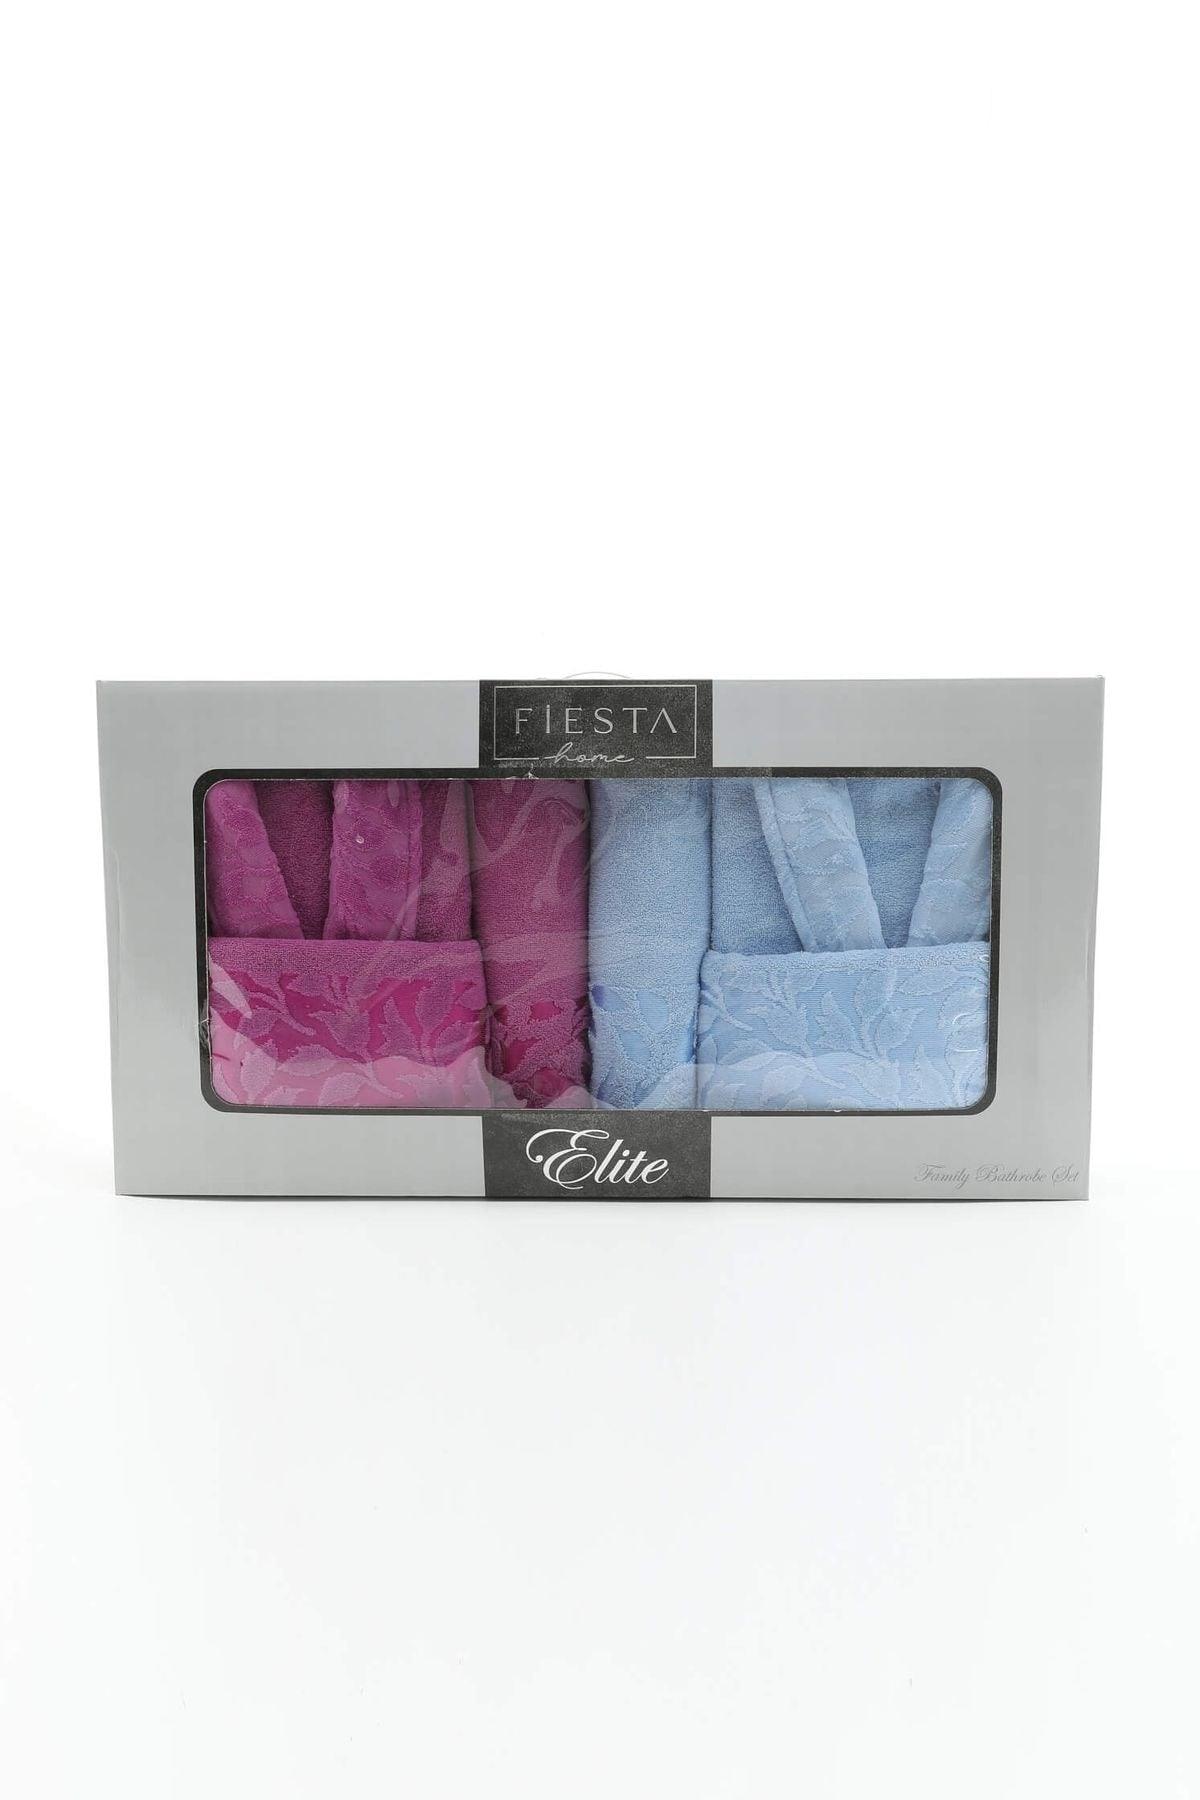 Fiesta Elite Cotton 6 Pieces Family Bathrobe Set - Plum - Blue - Swordslife